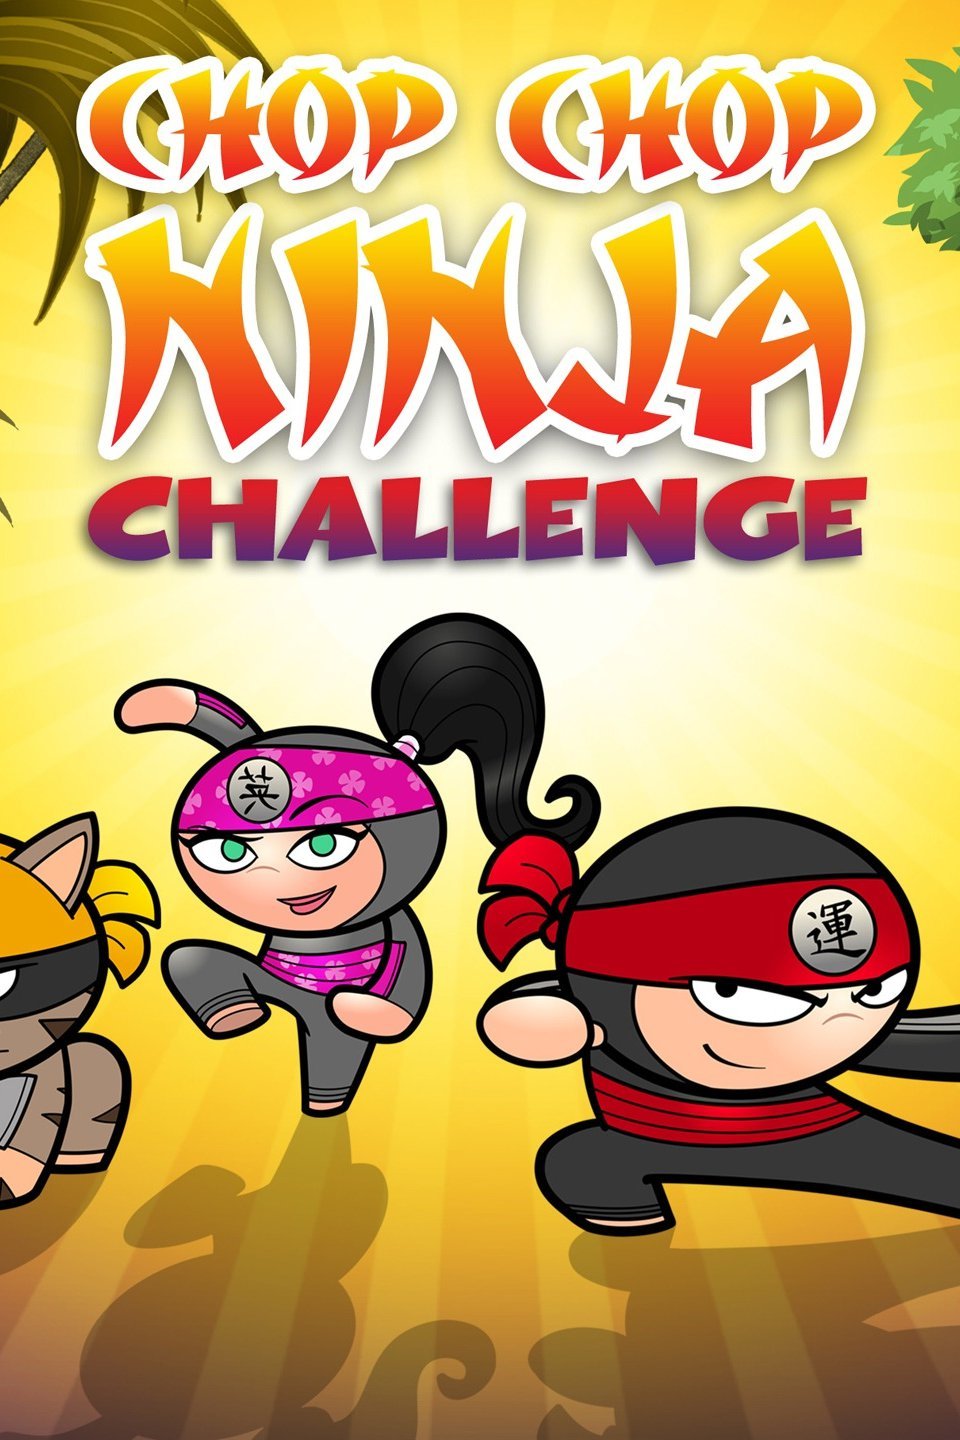 Chop Chop Ninja Challenge.